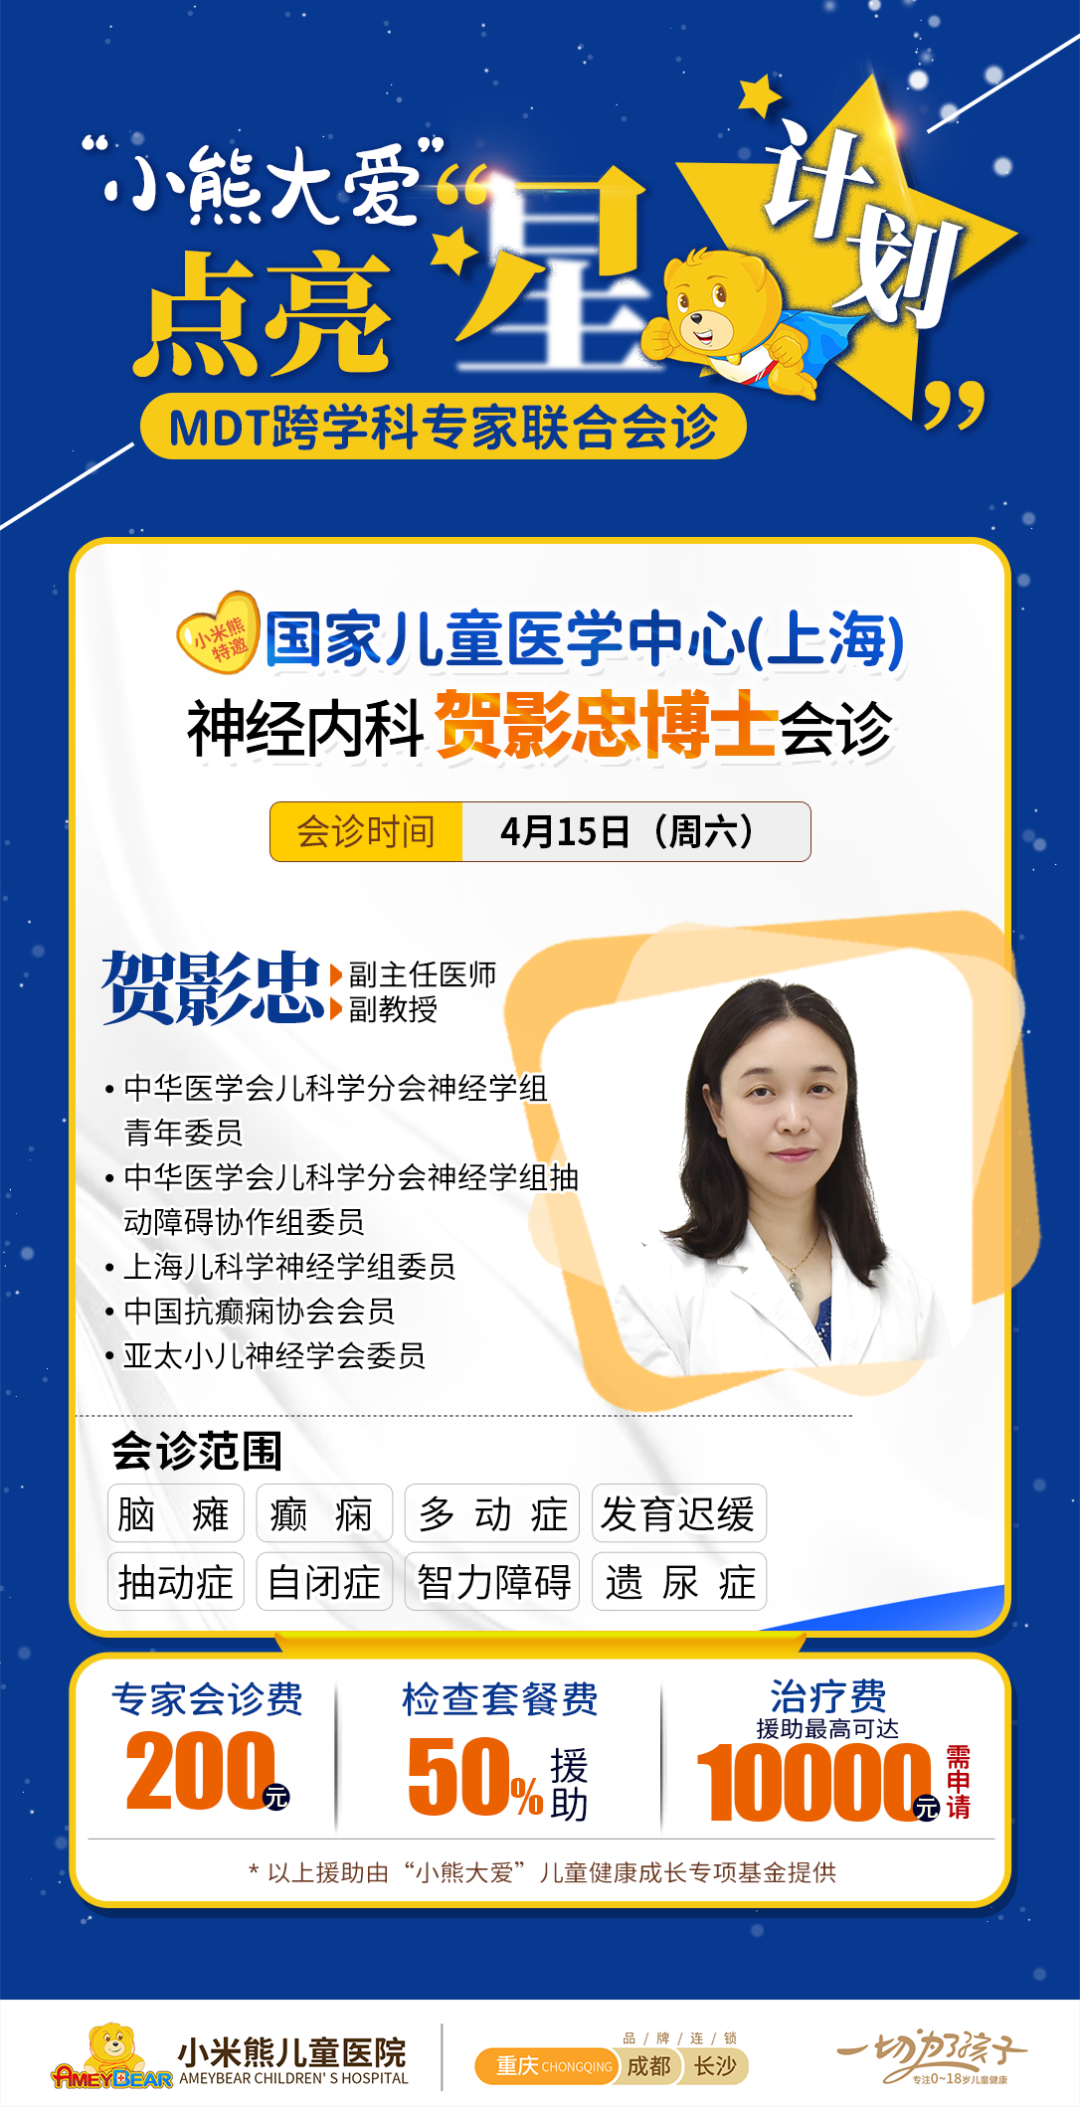 国家儿童医学中心(上海)贺影忠博士即将坐诊小米熊